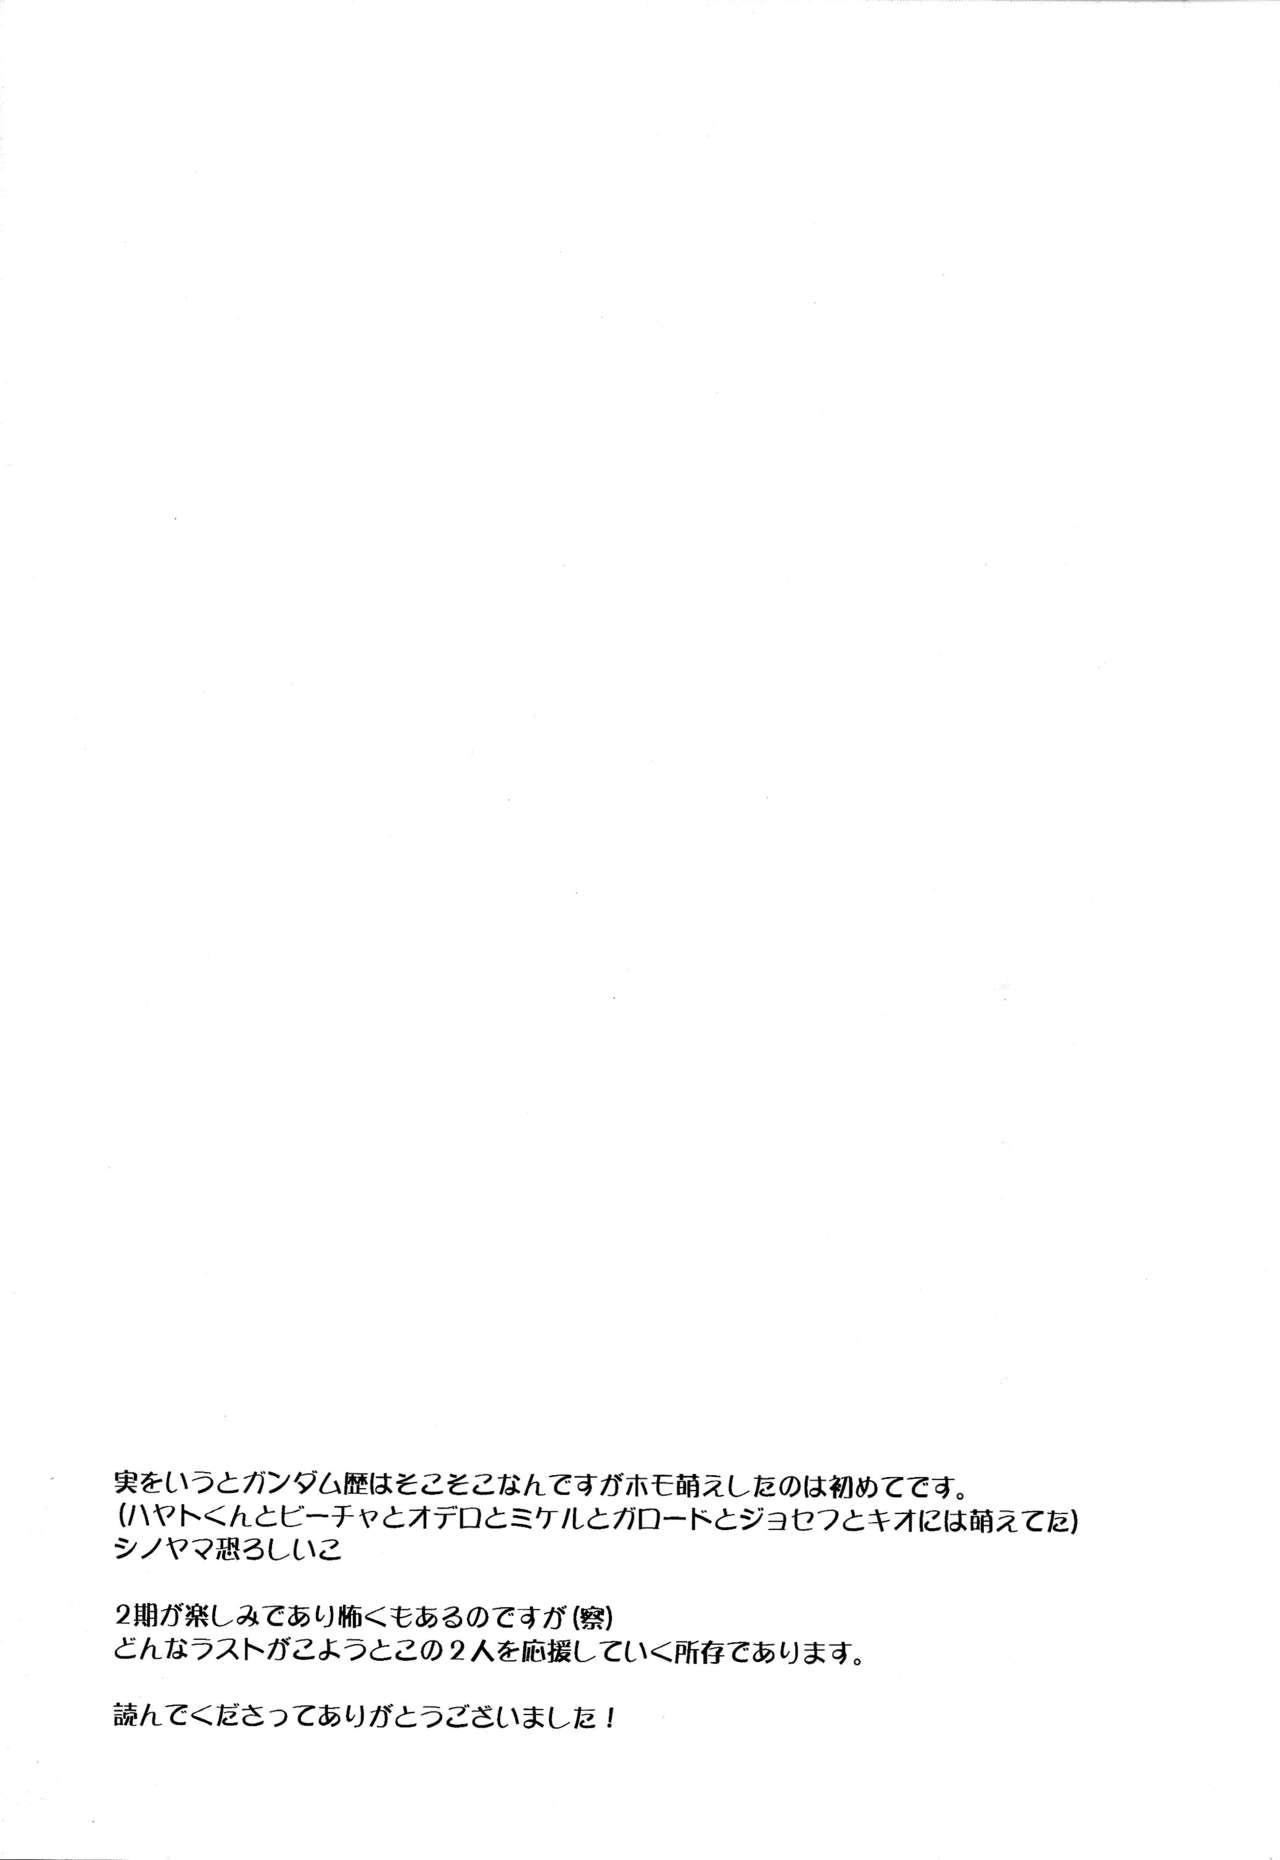 Ecchi Kanbyou Suruyo - Mobile suit gundam tekketsu no orphans Glamcore - Page 12